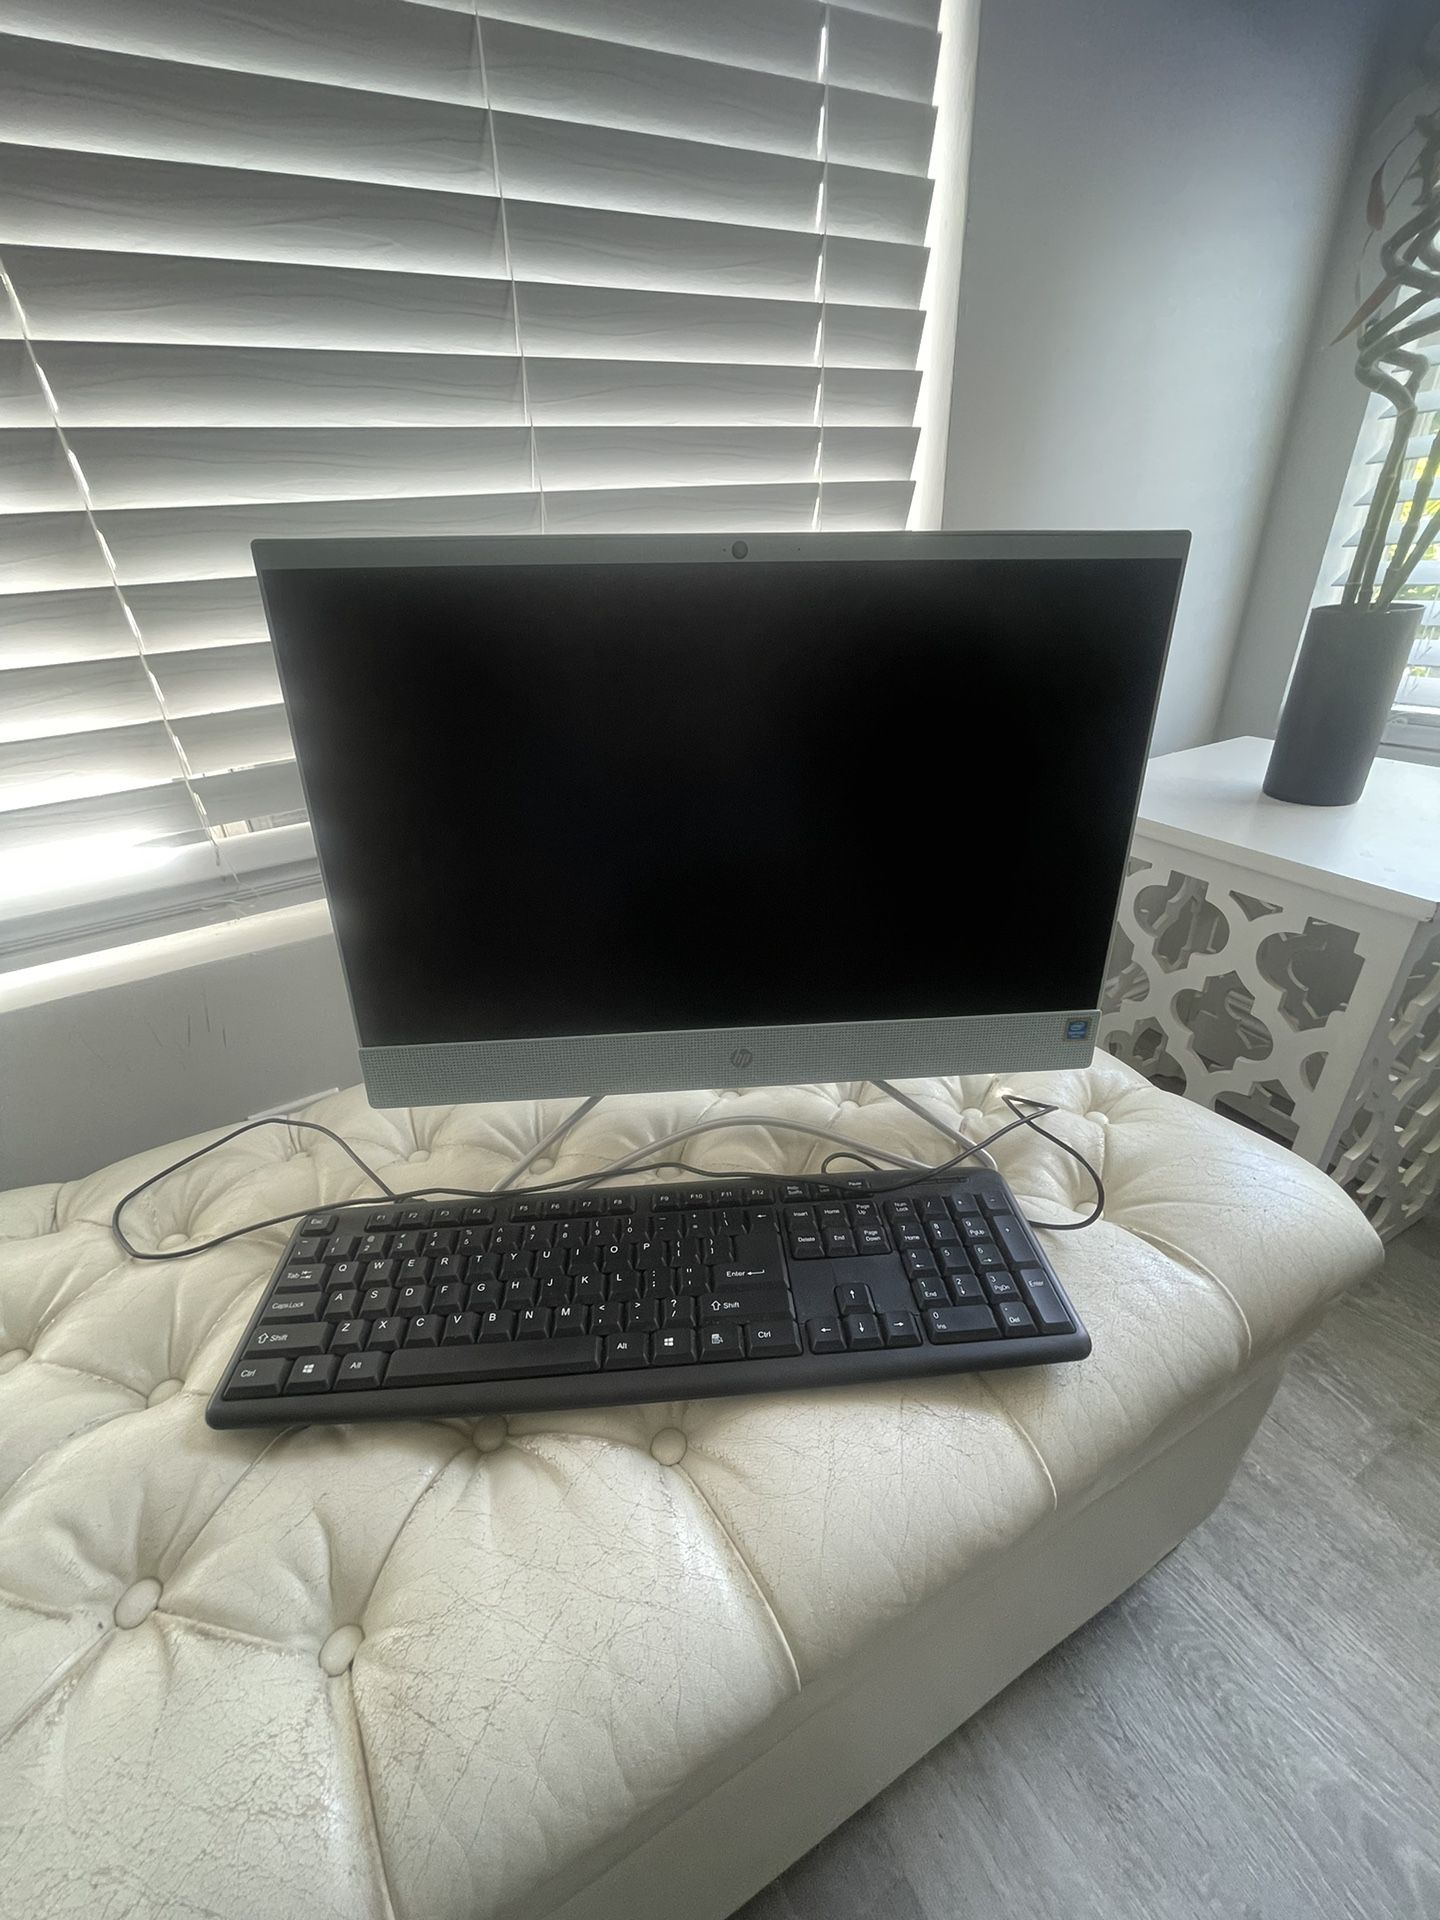 Computer monitor and keyboard 